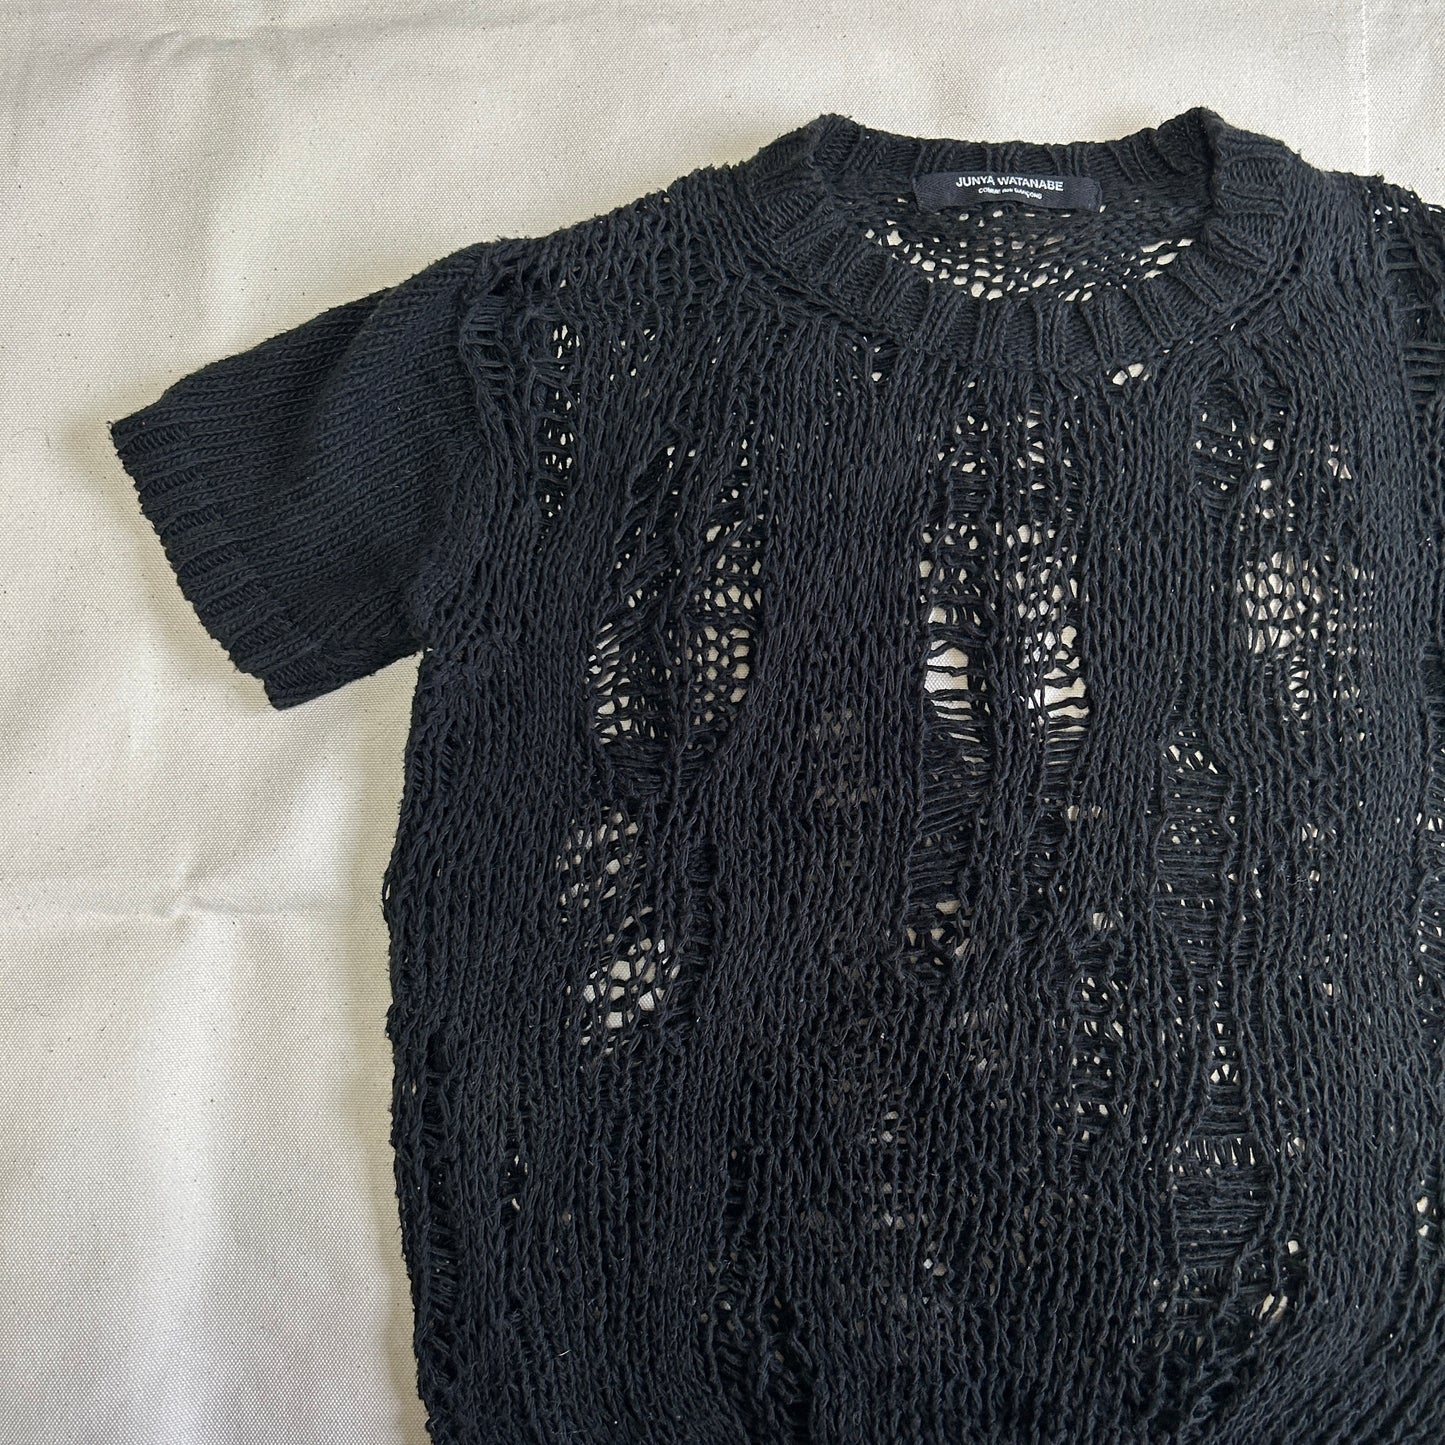 AD2001 JUNYA WATANABE Damage Processing Knit Shirt